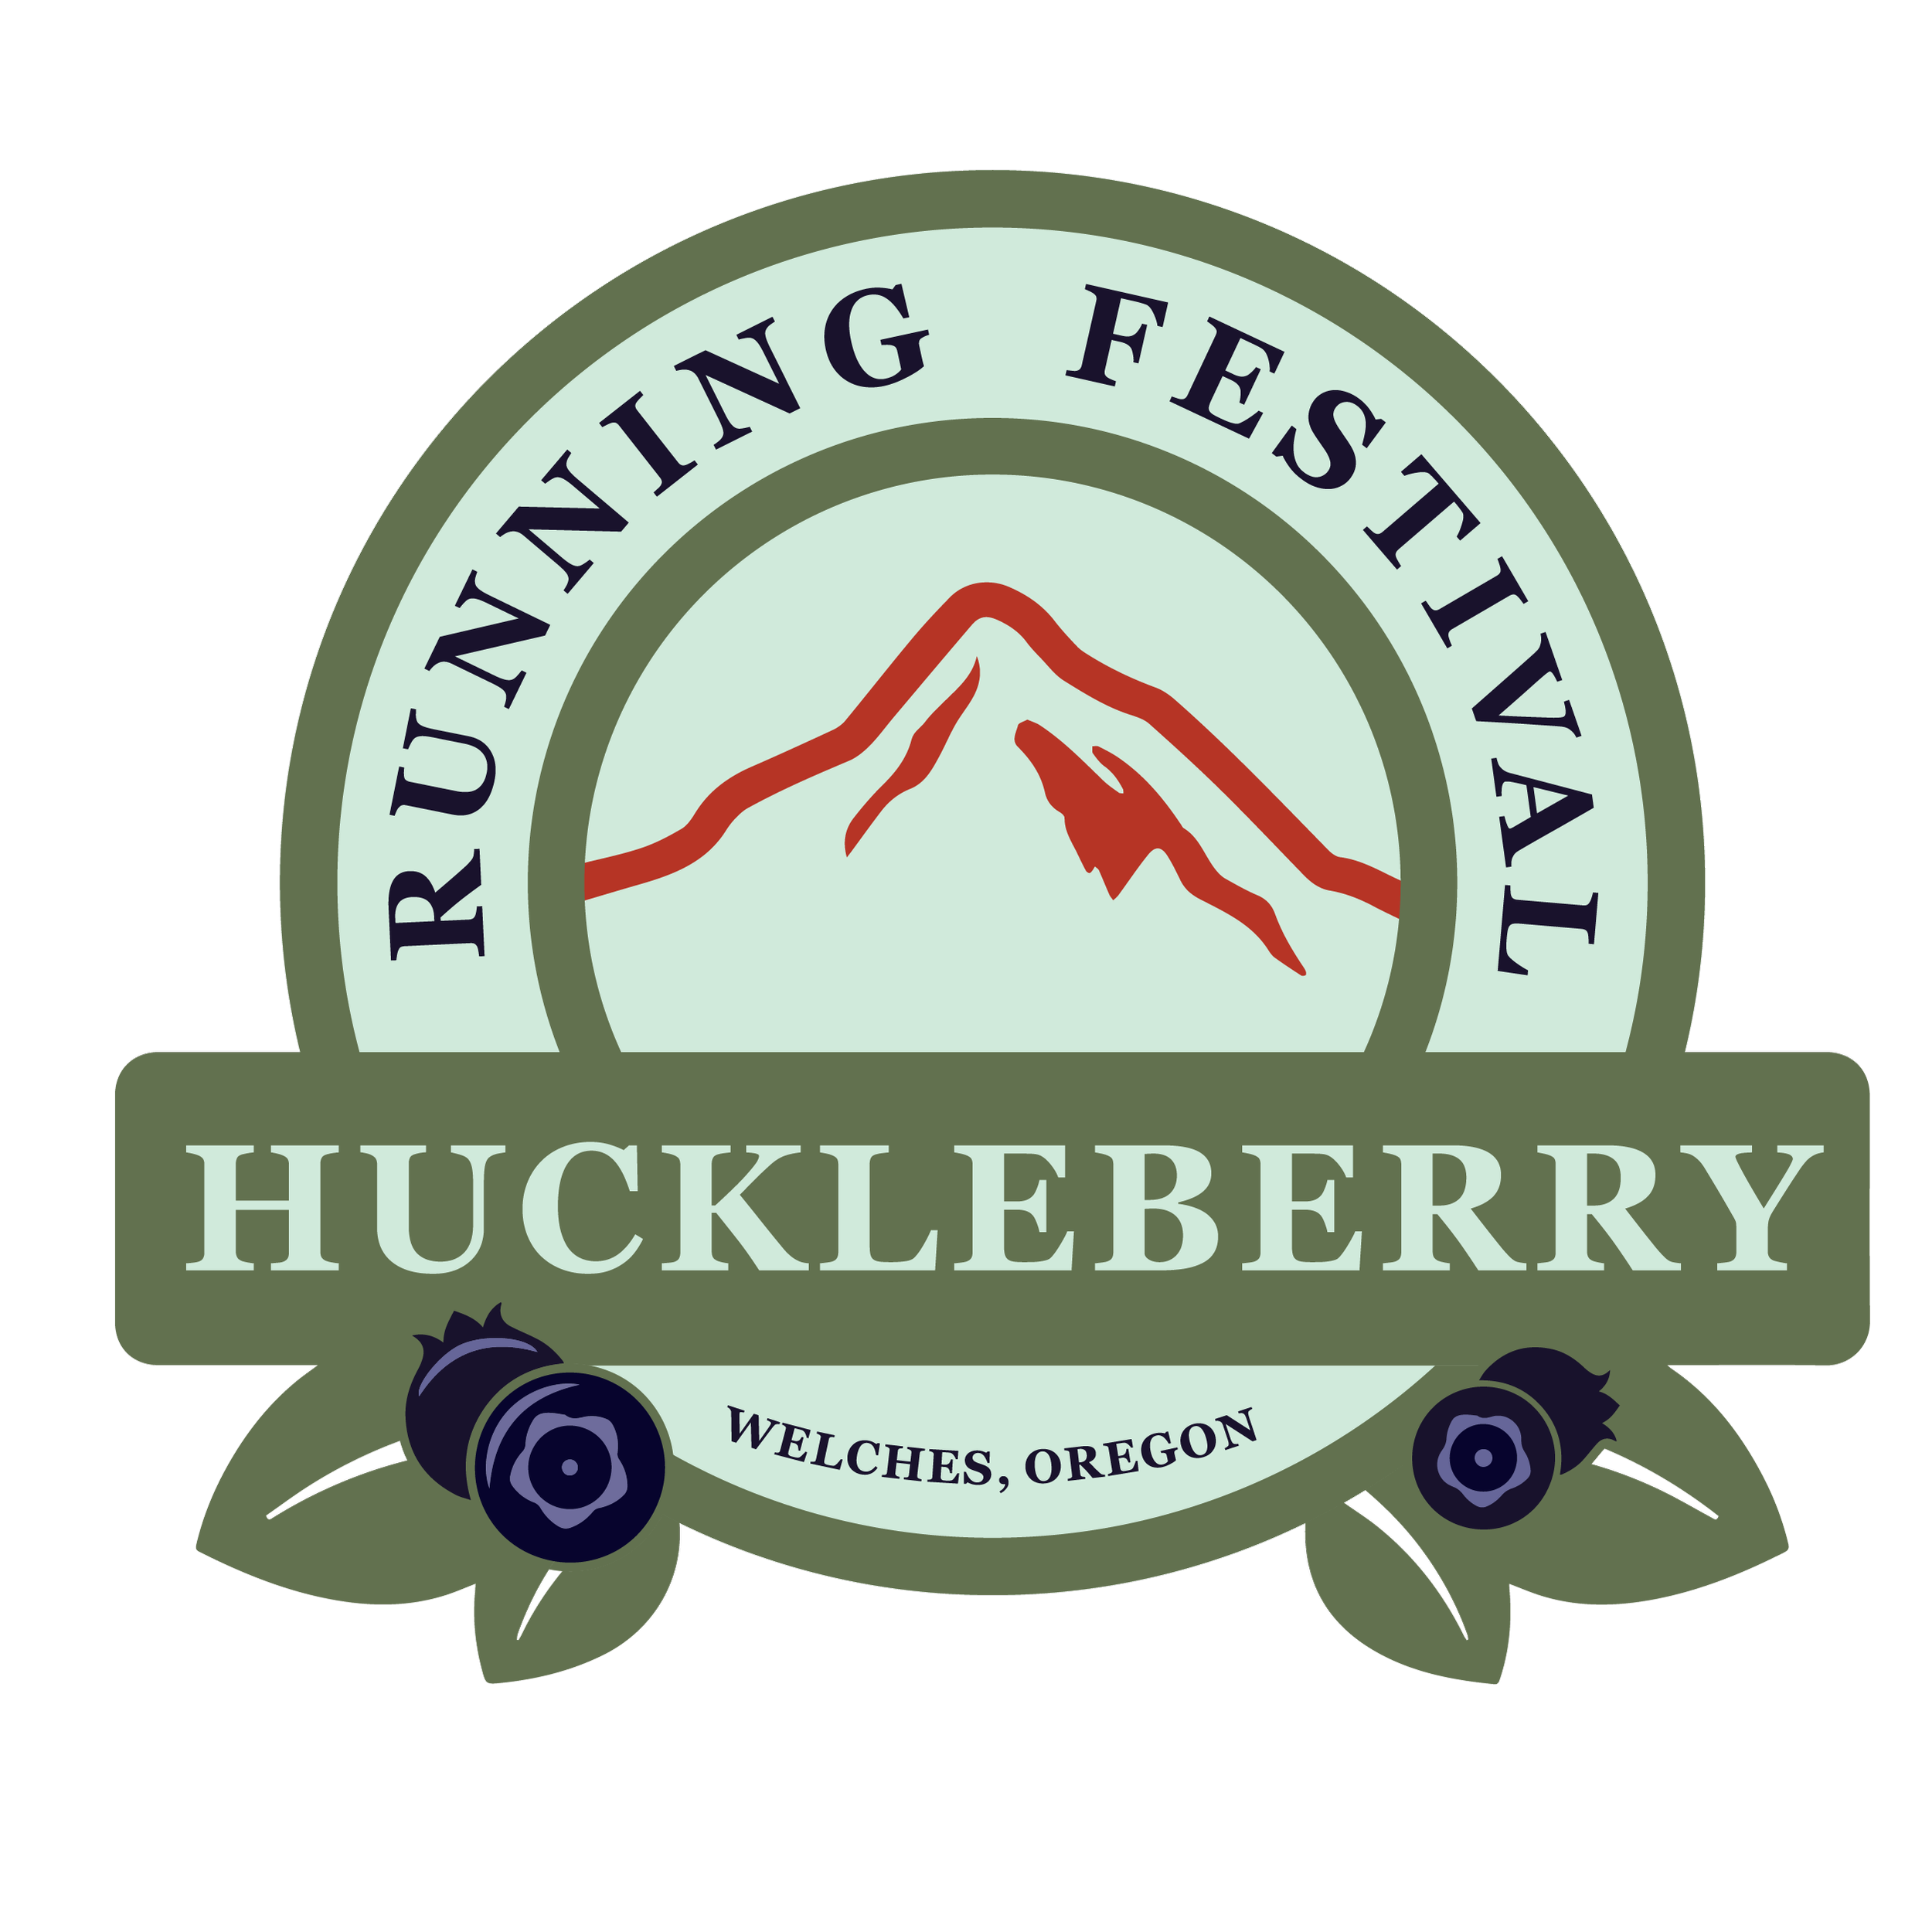 Huckleberry Running Festival logo on RaceRaves